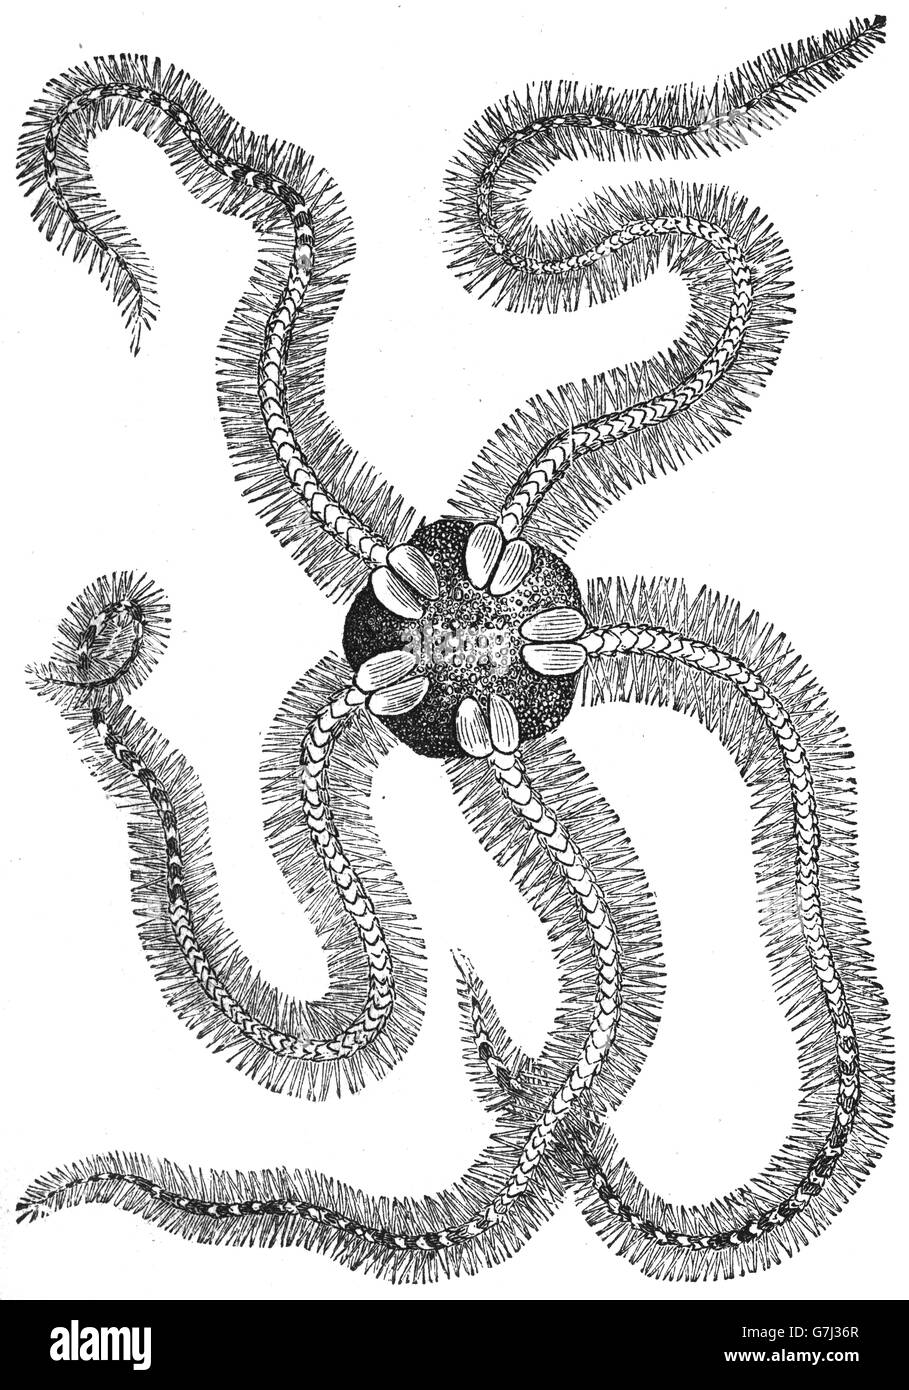 Ophiothrix fragilis, fragili stelle, illustrazione dal libro datato 1904 Foto Stock